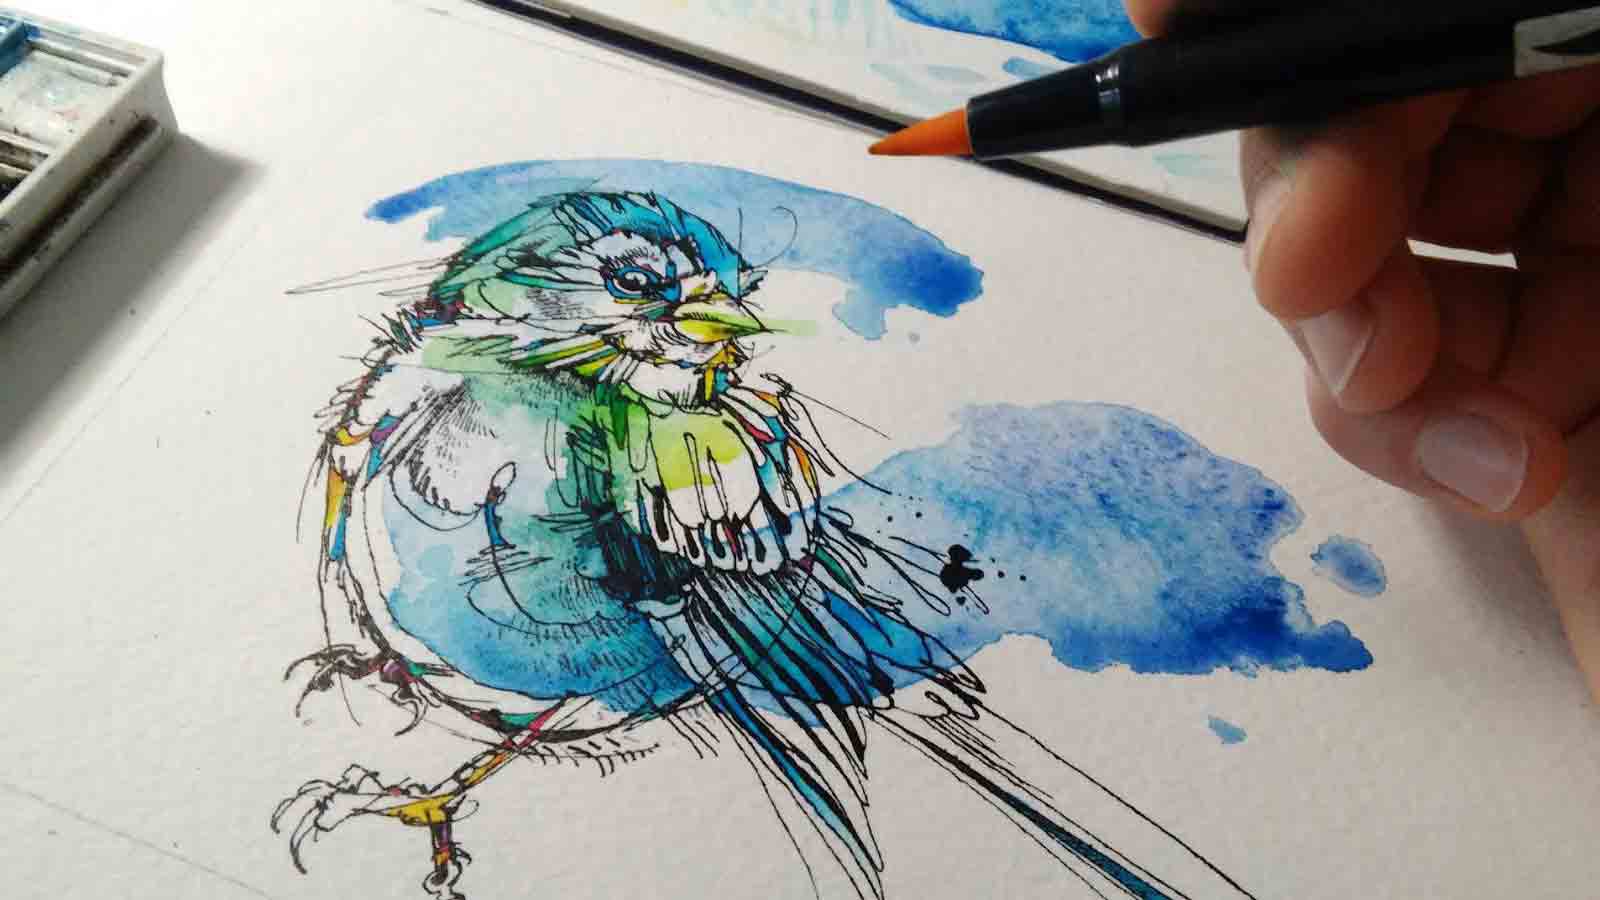 In-progress illustration of a bird